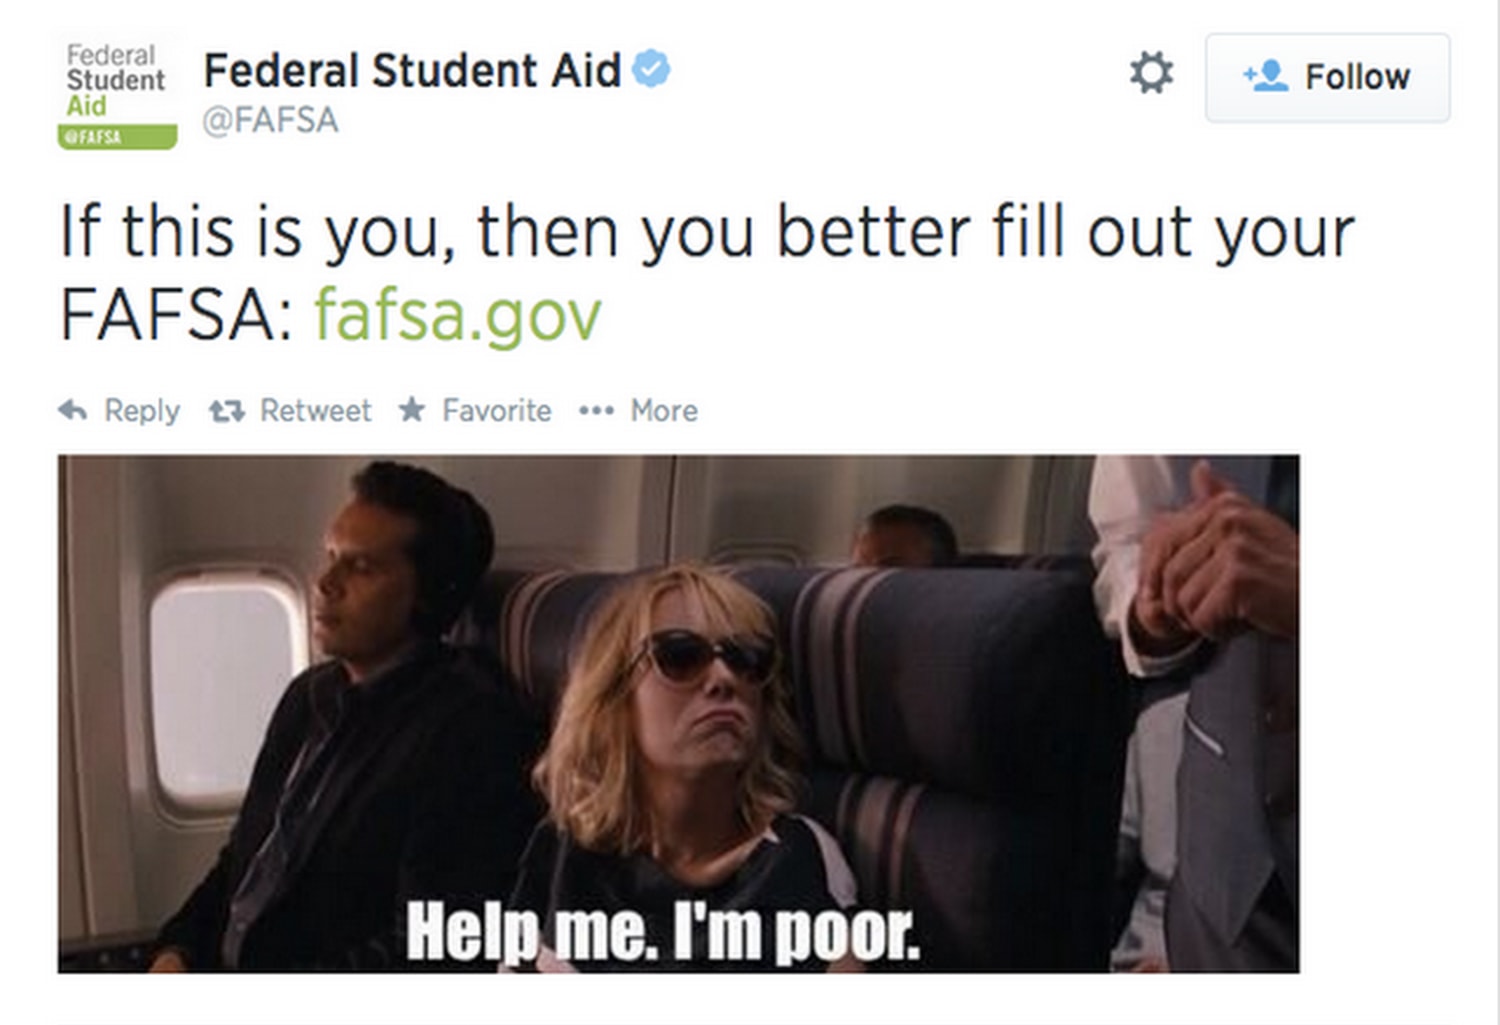 FAFSA 'I'm Poor' Tweet Sparks Online Backlash